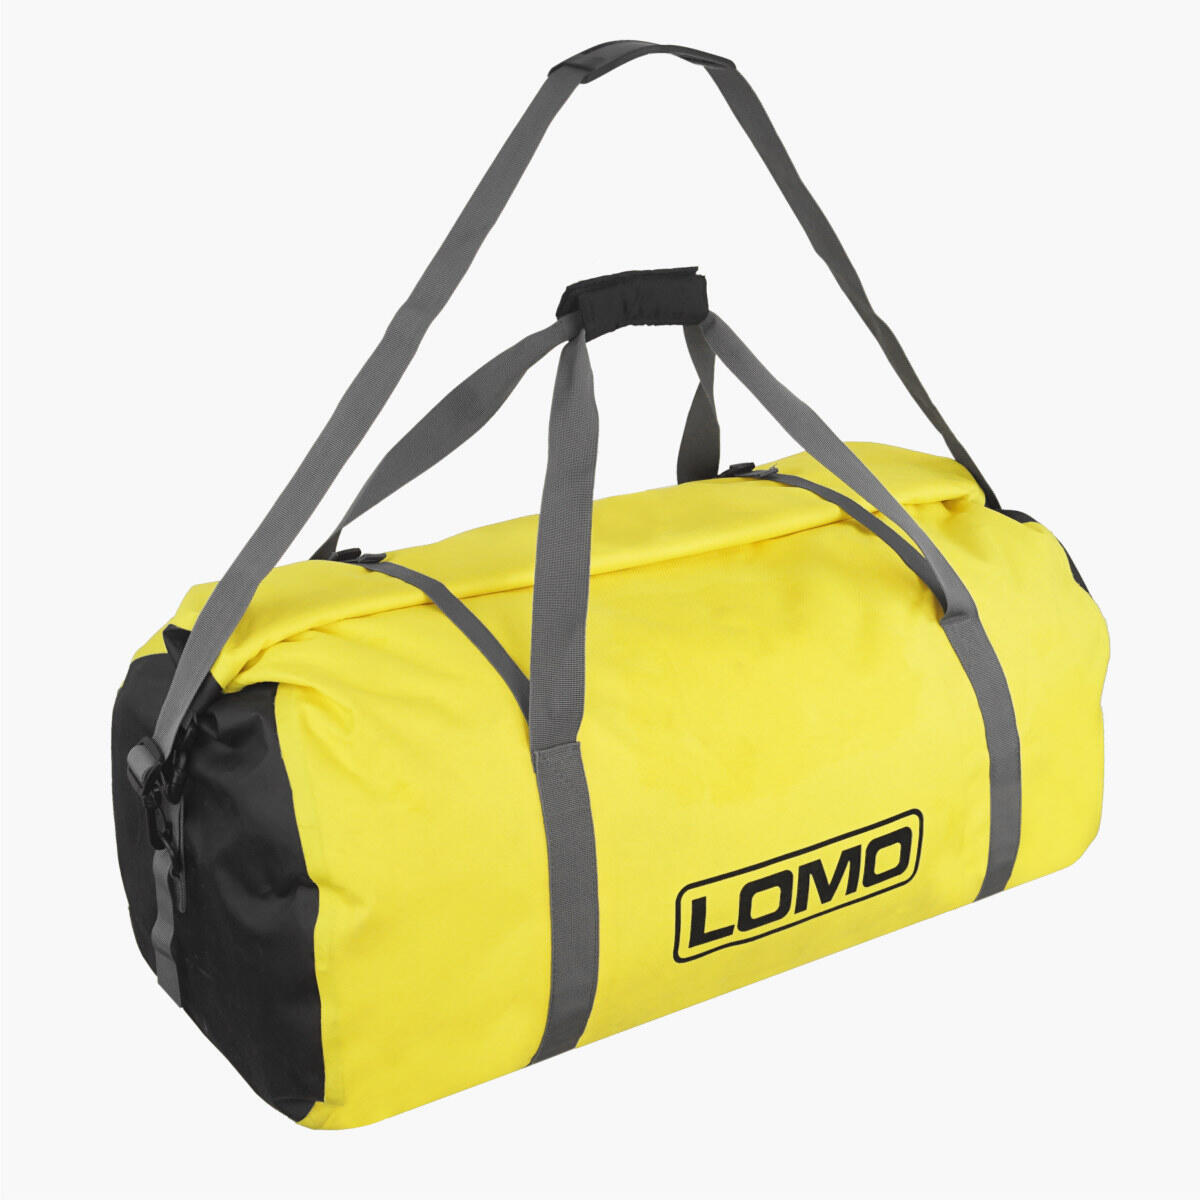 Lomo 60L Dry Bag Holdall - Yellow 5/7